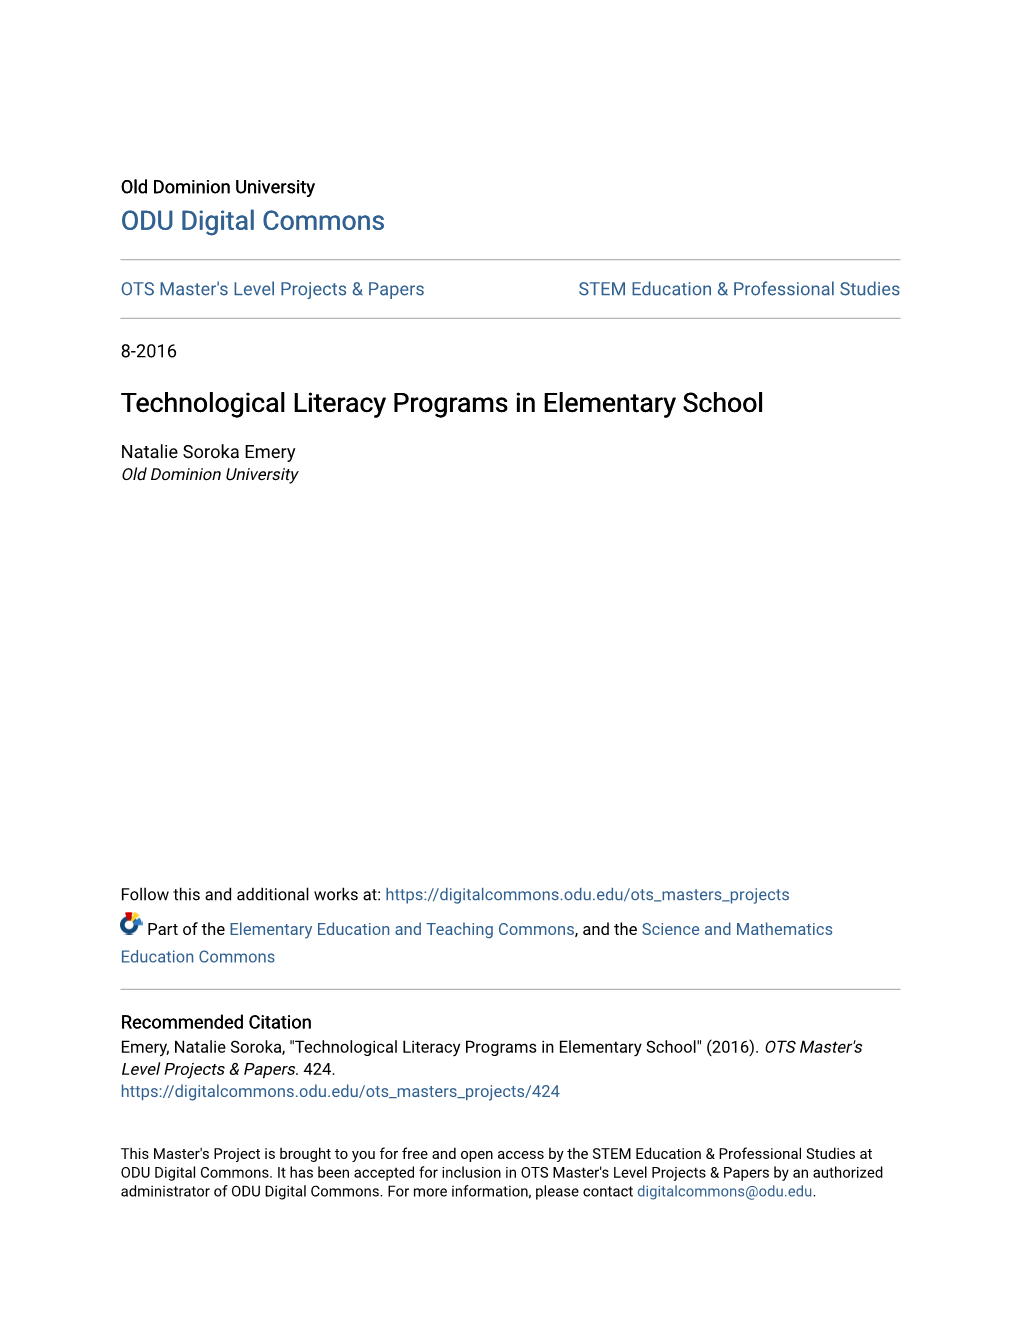 Technological Literacy Programs in Elementary School